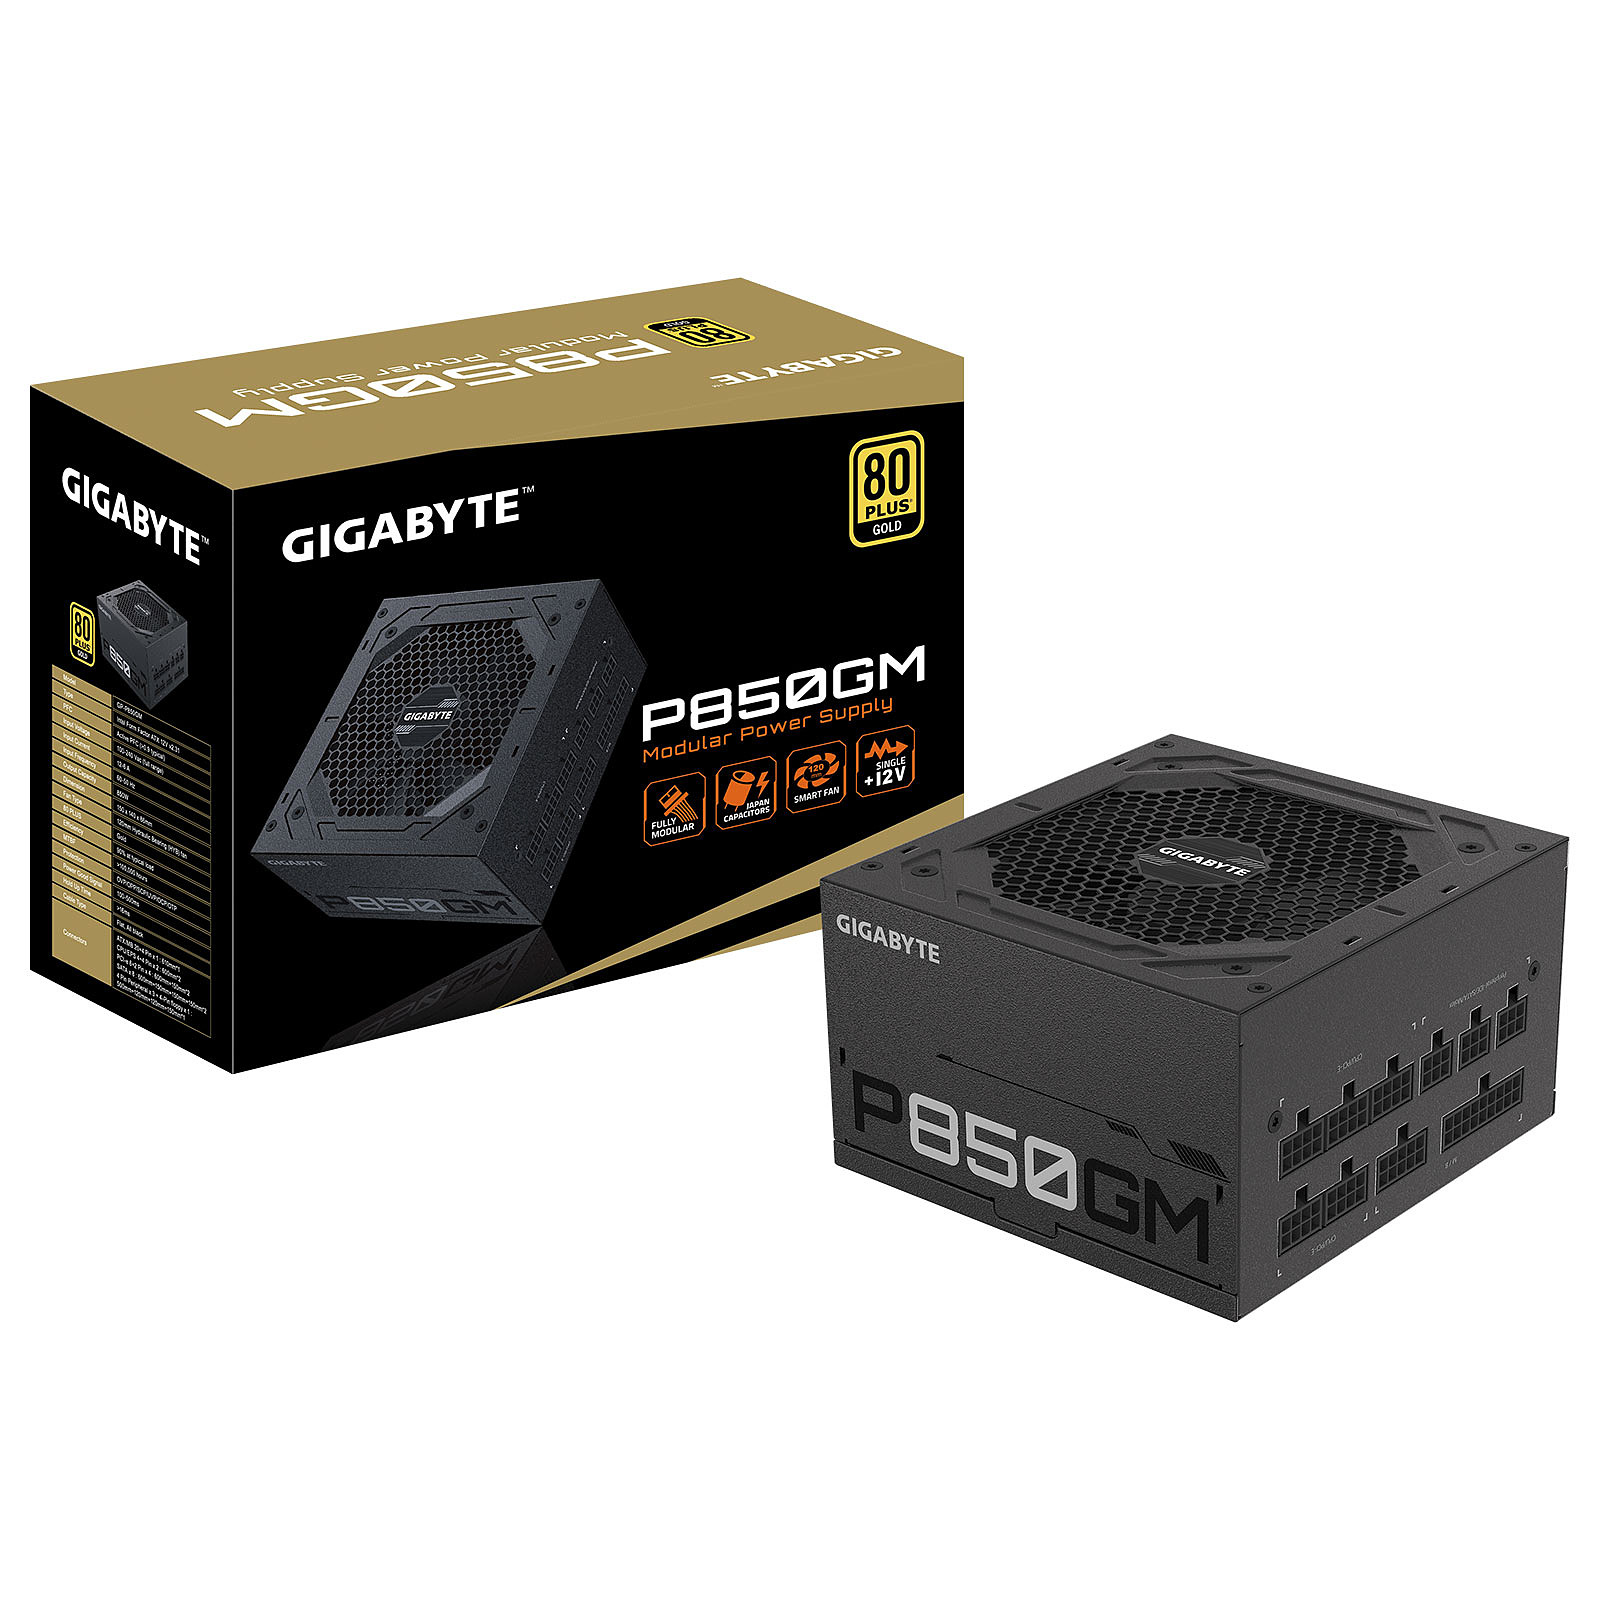 Gigabyte GP-P850GM - Alimentation PC Gigabyte